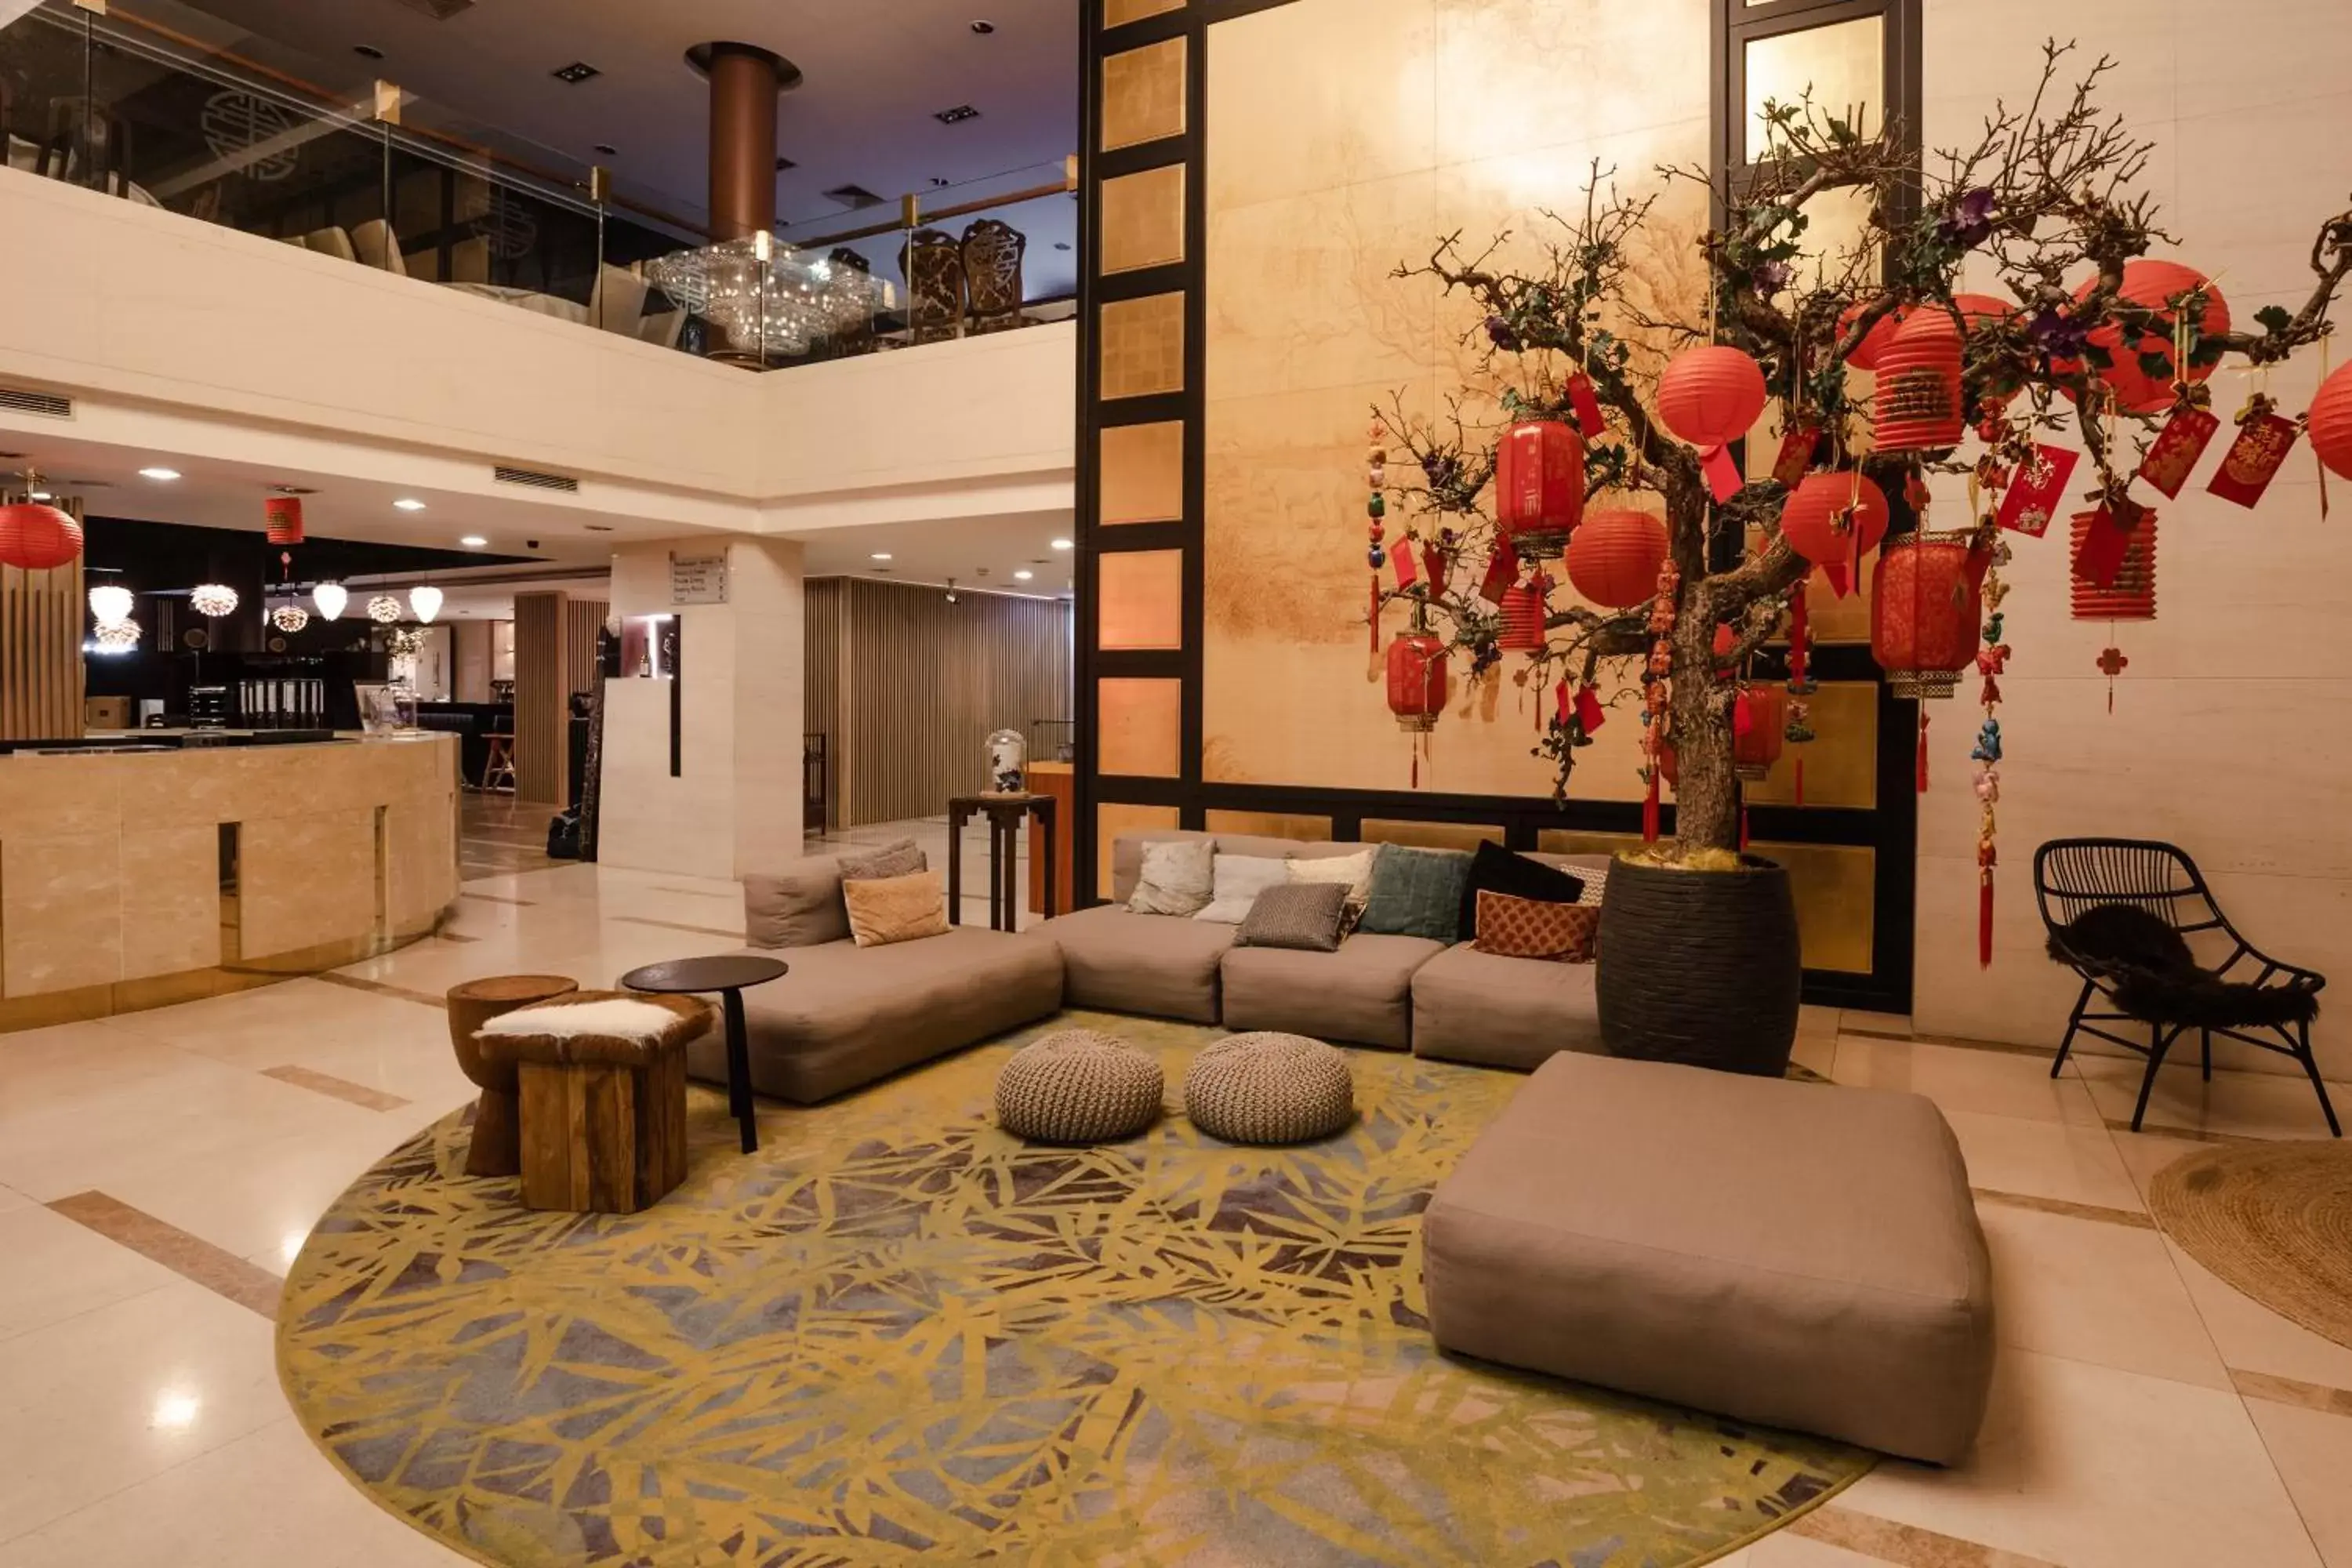 Lobby or reception, Lobby/Reception in Shanghai Hotel Holland